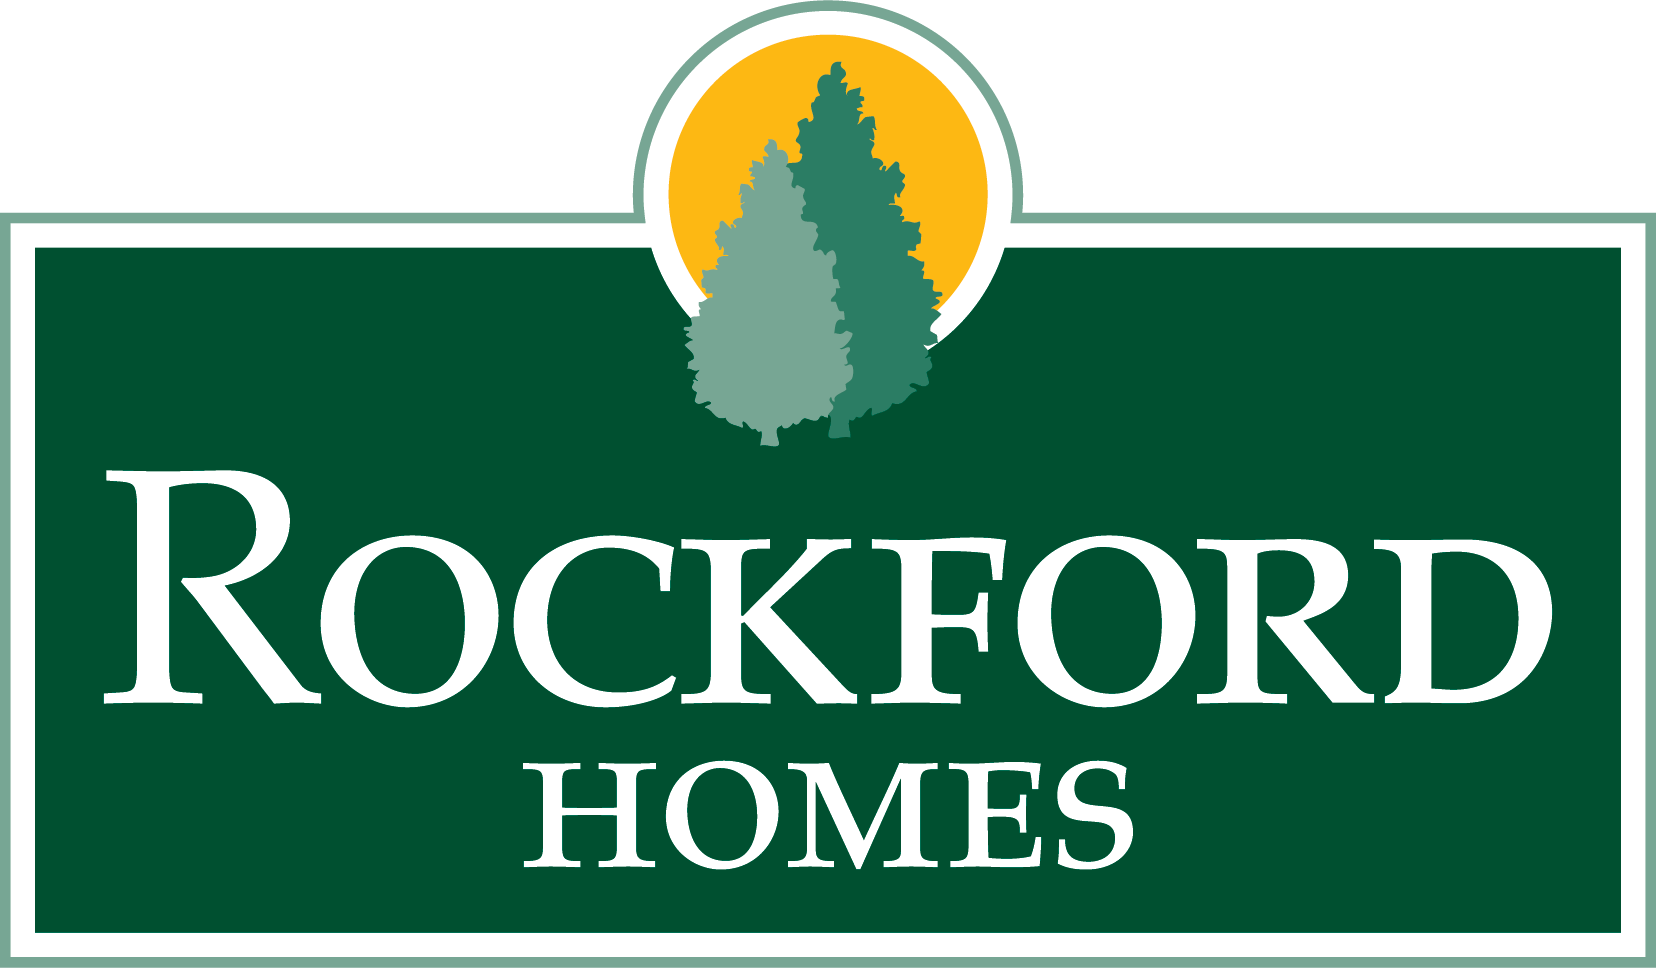 Rockford Homes